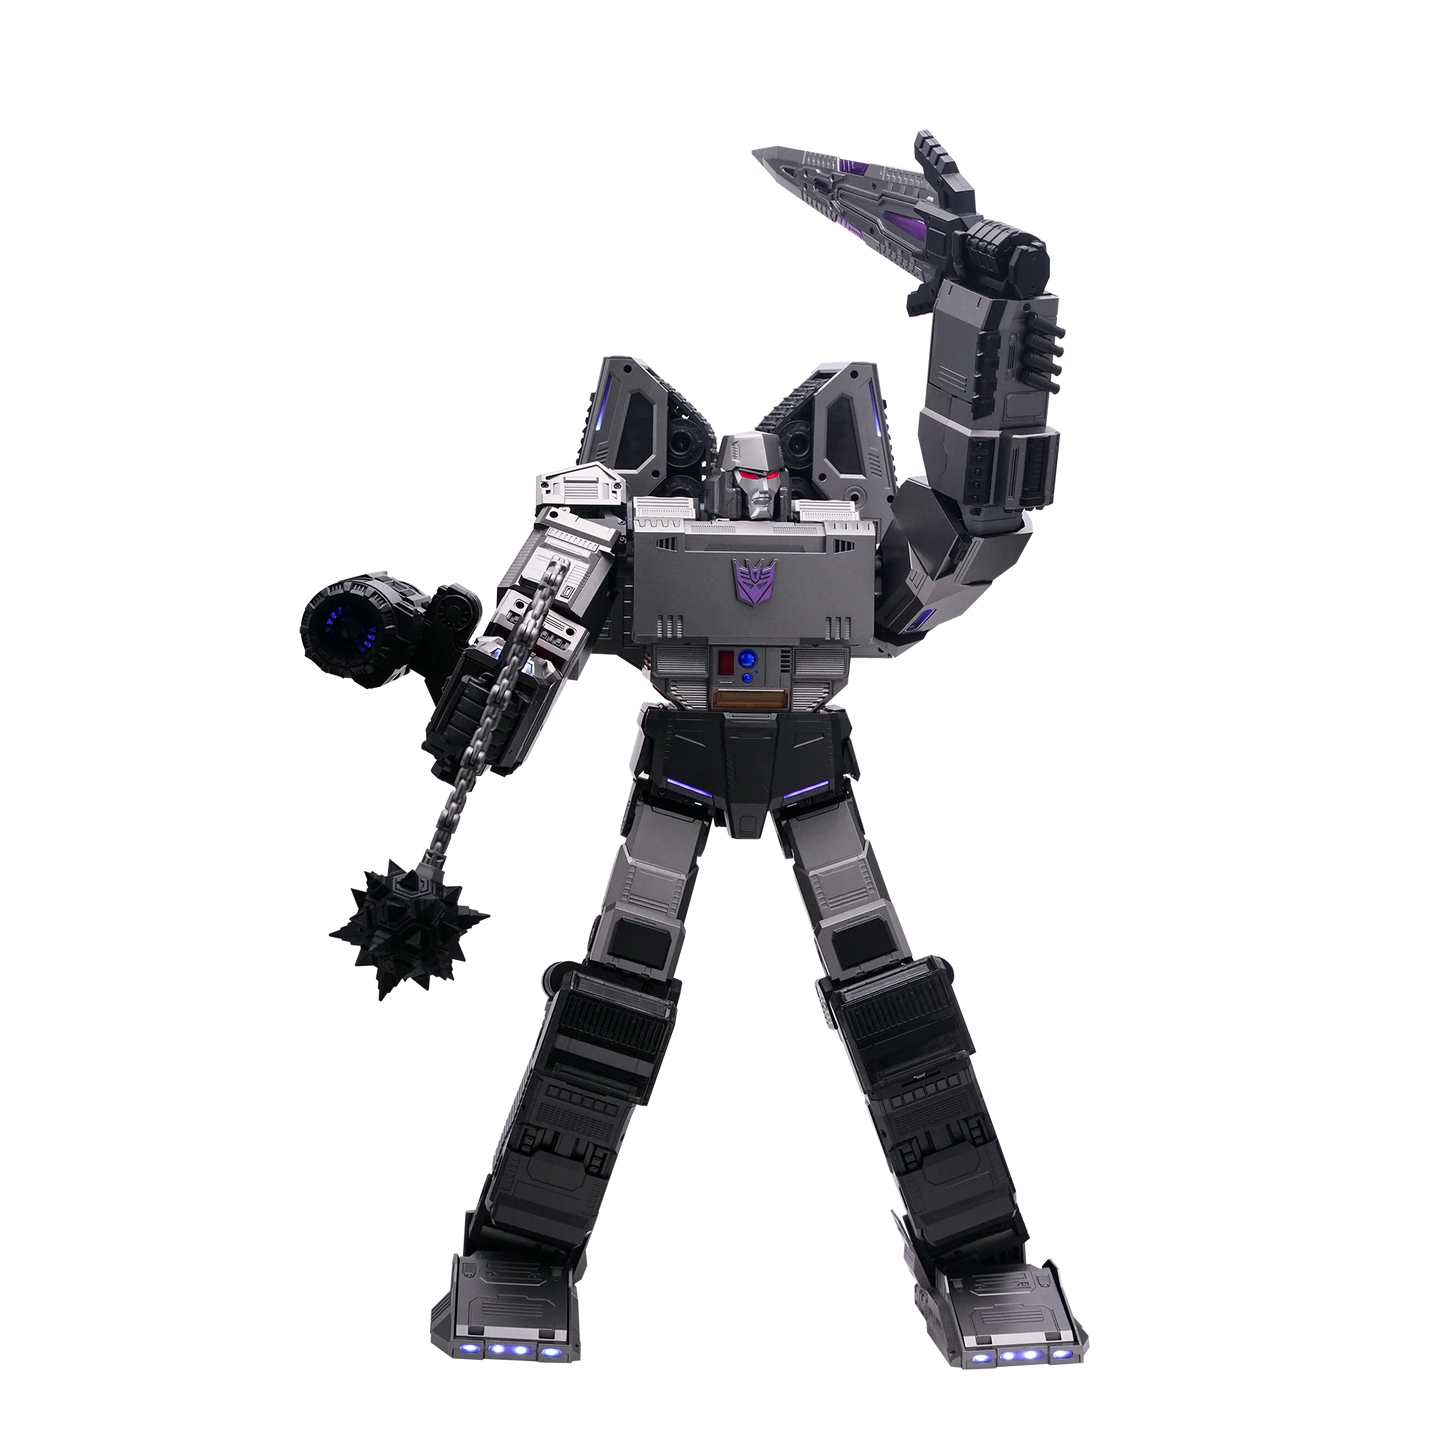 PREORDER Robosen Transformers Megatron Auto-Converting Robot Flagship